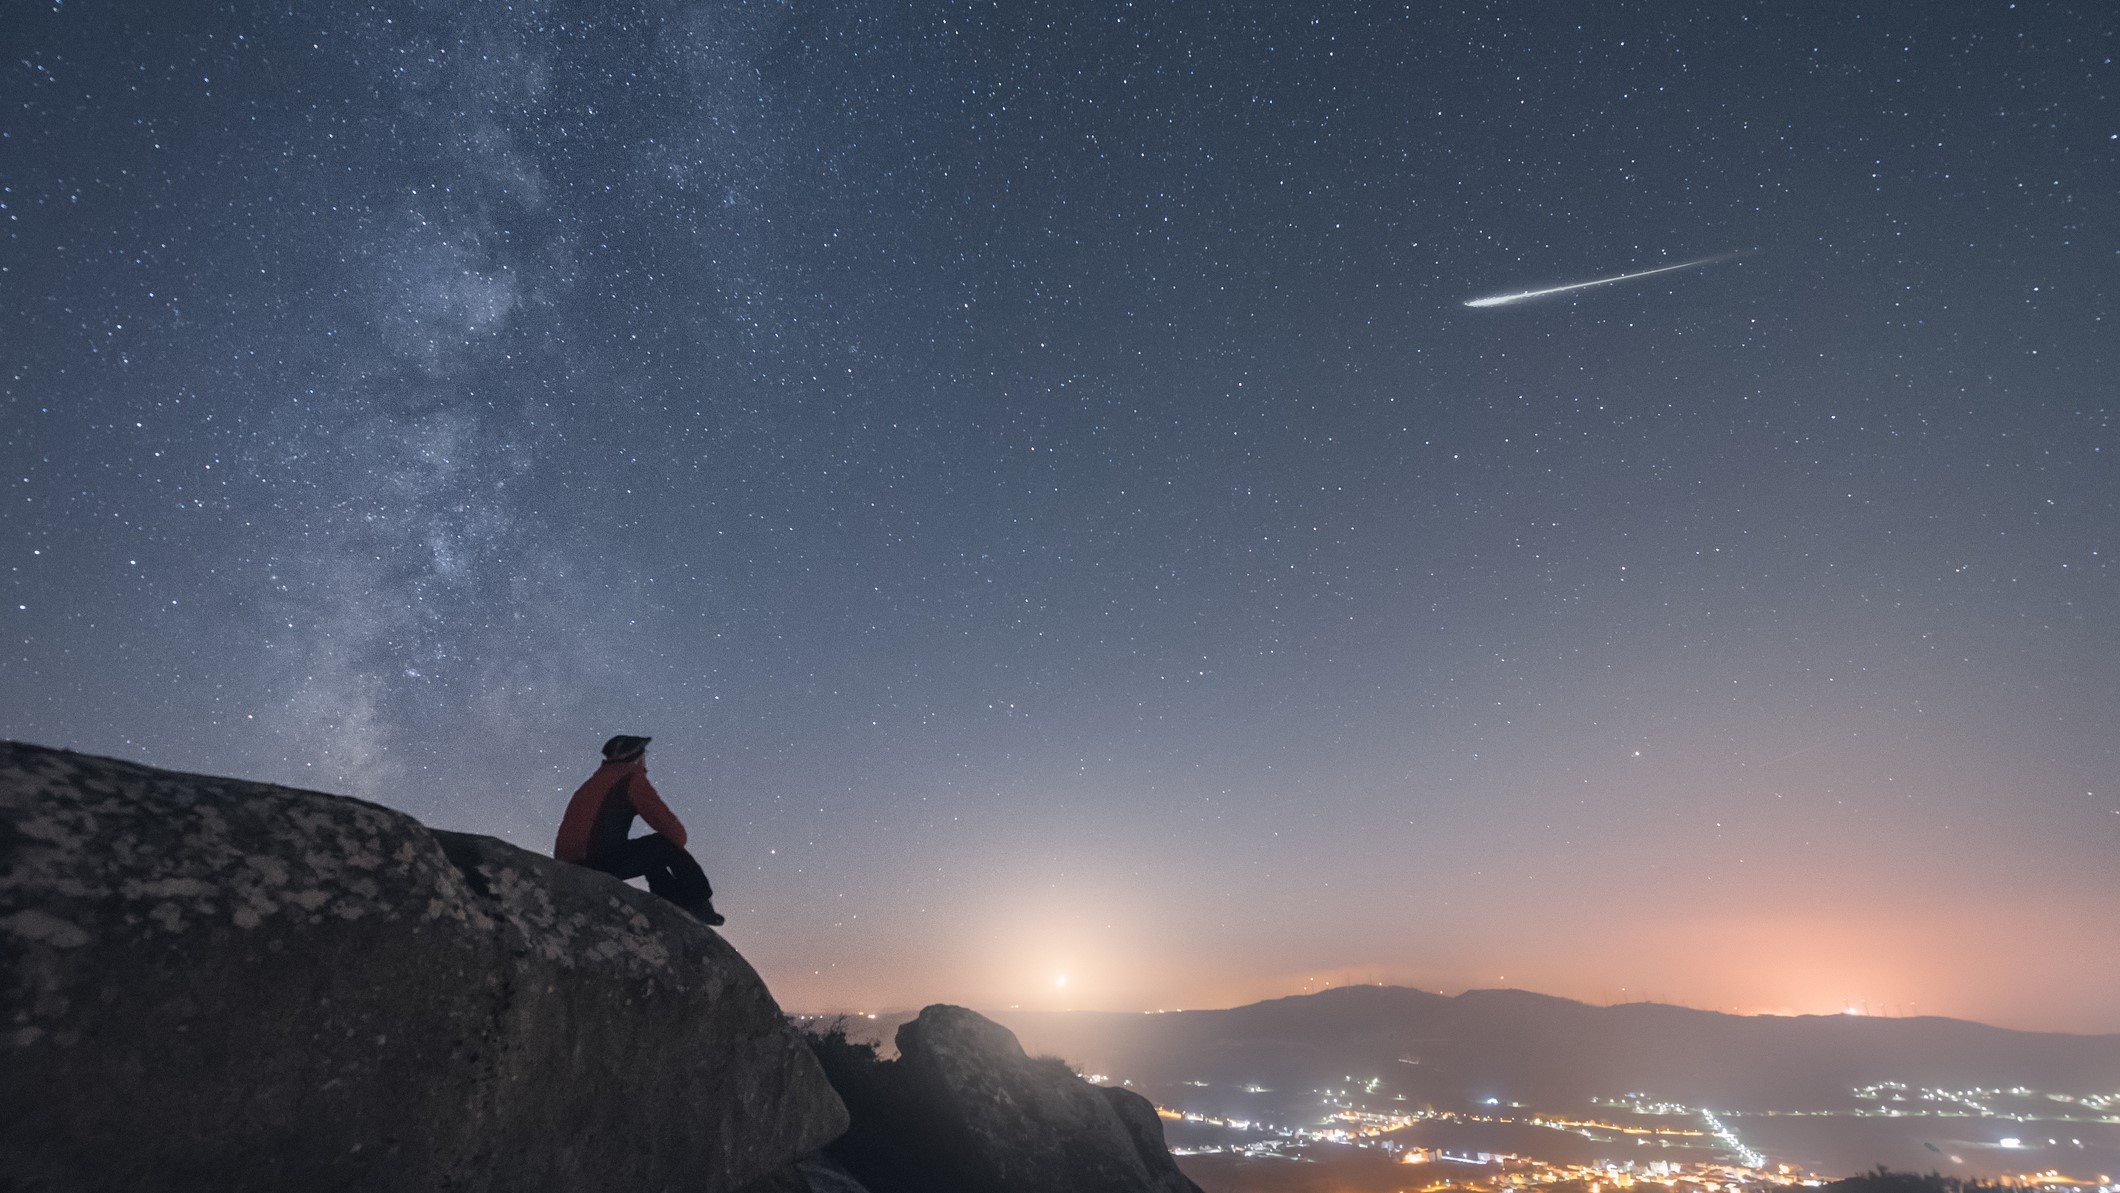 مردی در حال مشاهده ستاره درخشان، راه شیری و غروب ماه